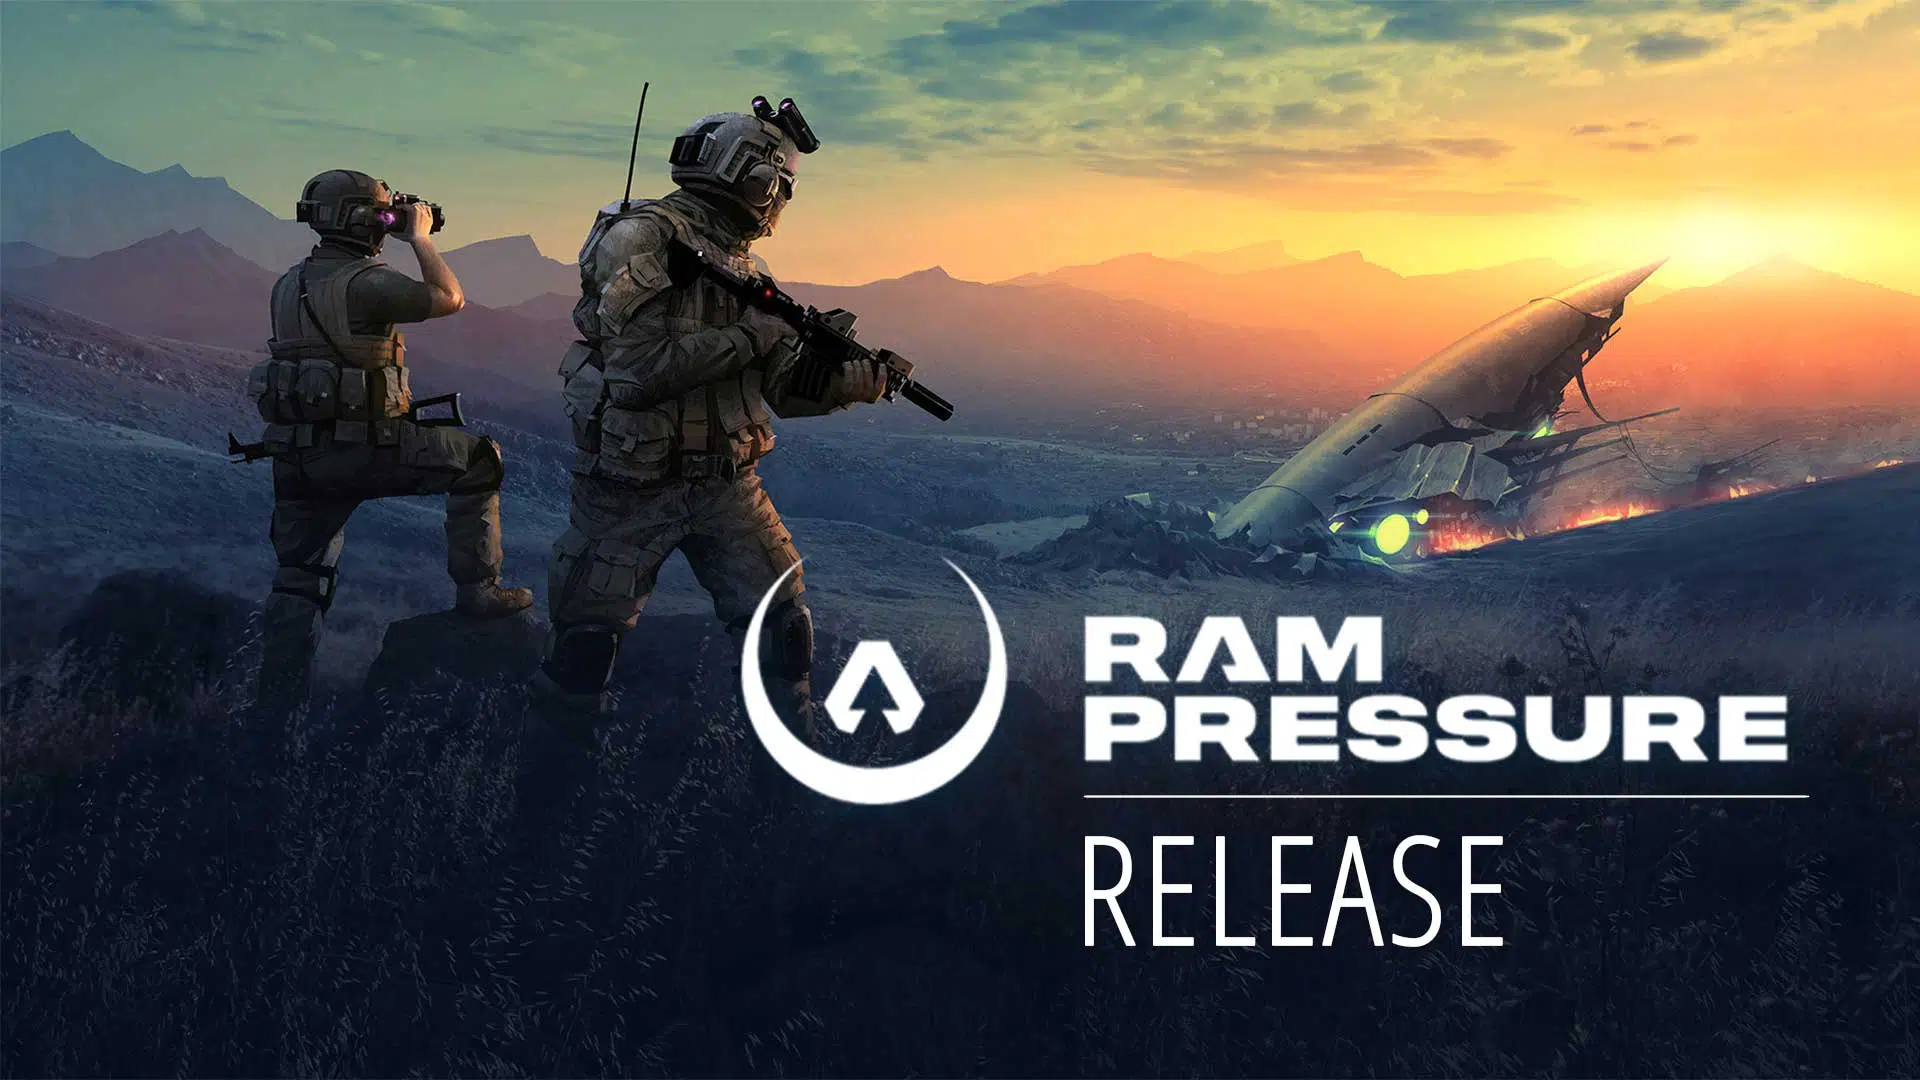 RAM Pressure release